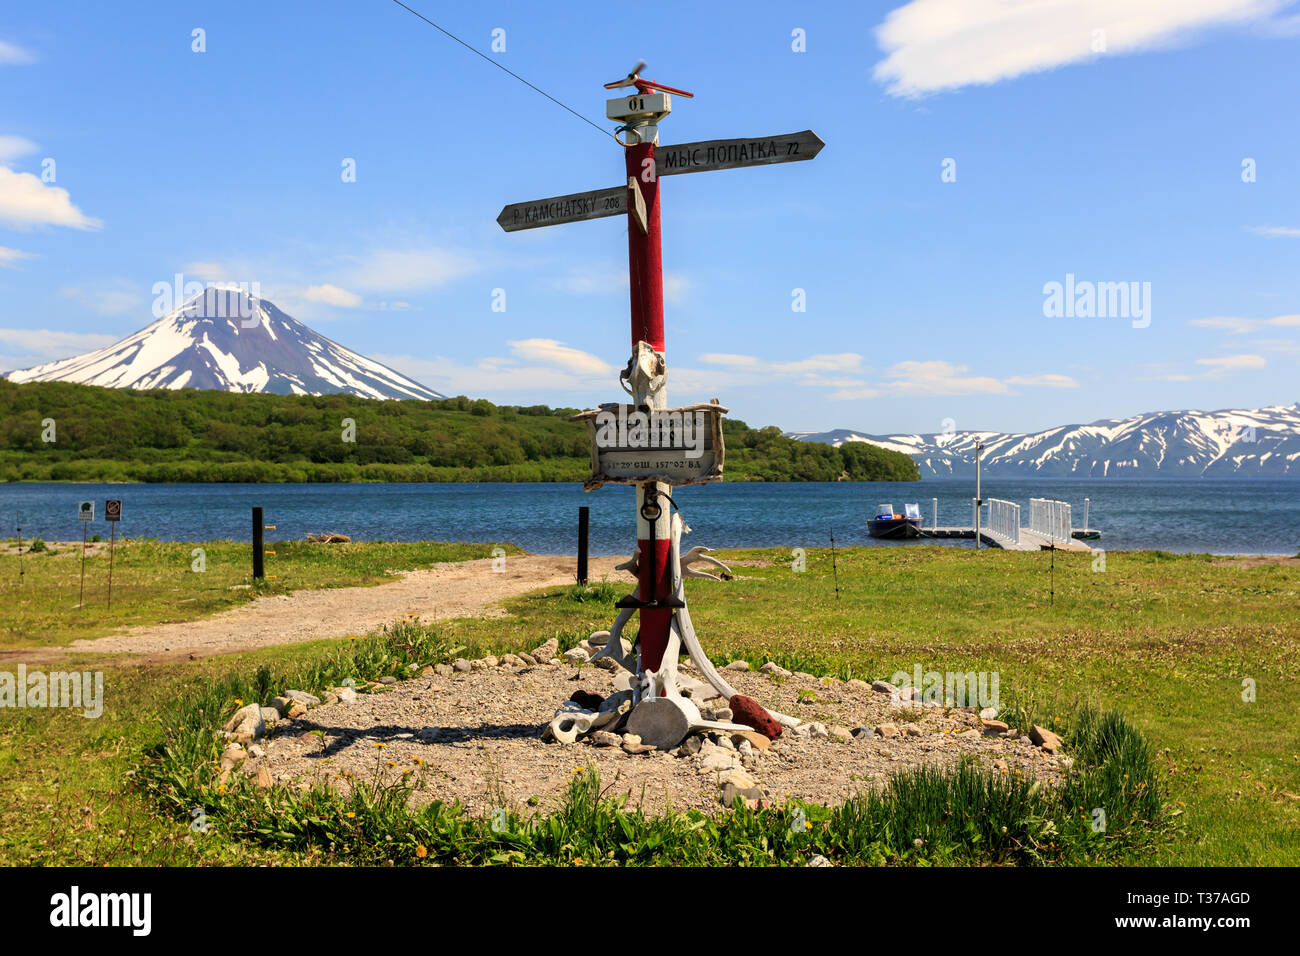 Penisola di Kamchatka, Russia - Luglio 7, 2018: Direzione segno posto vicino al lago di Kurile contro lo sfondo del vulcano Ilyinsky, Kamchatka Foto Stock